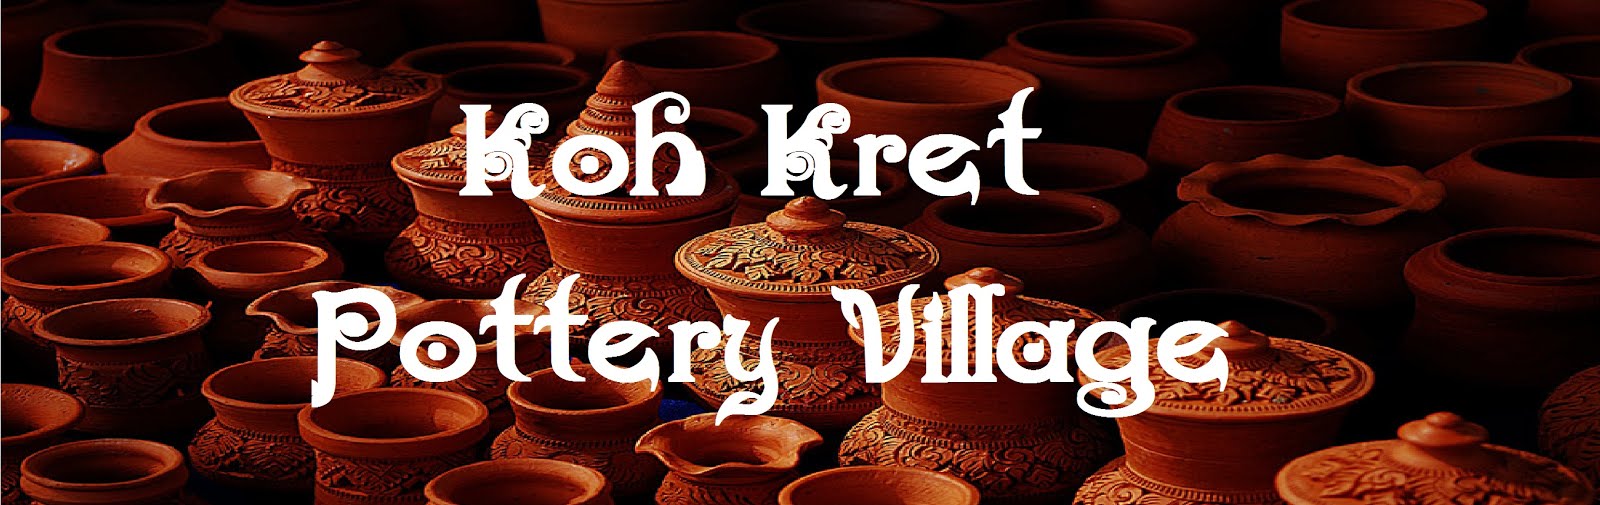 Koh-Kret Pottery Village